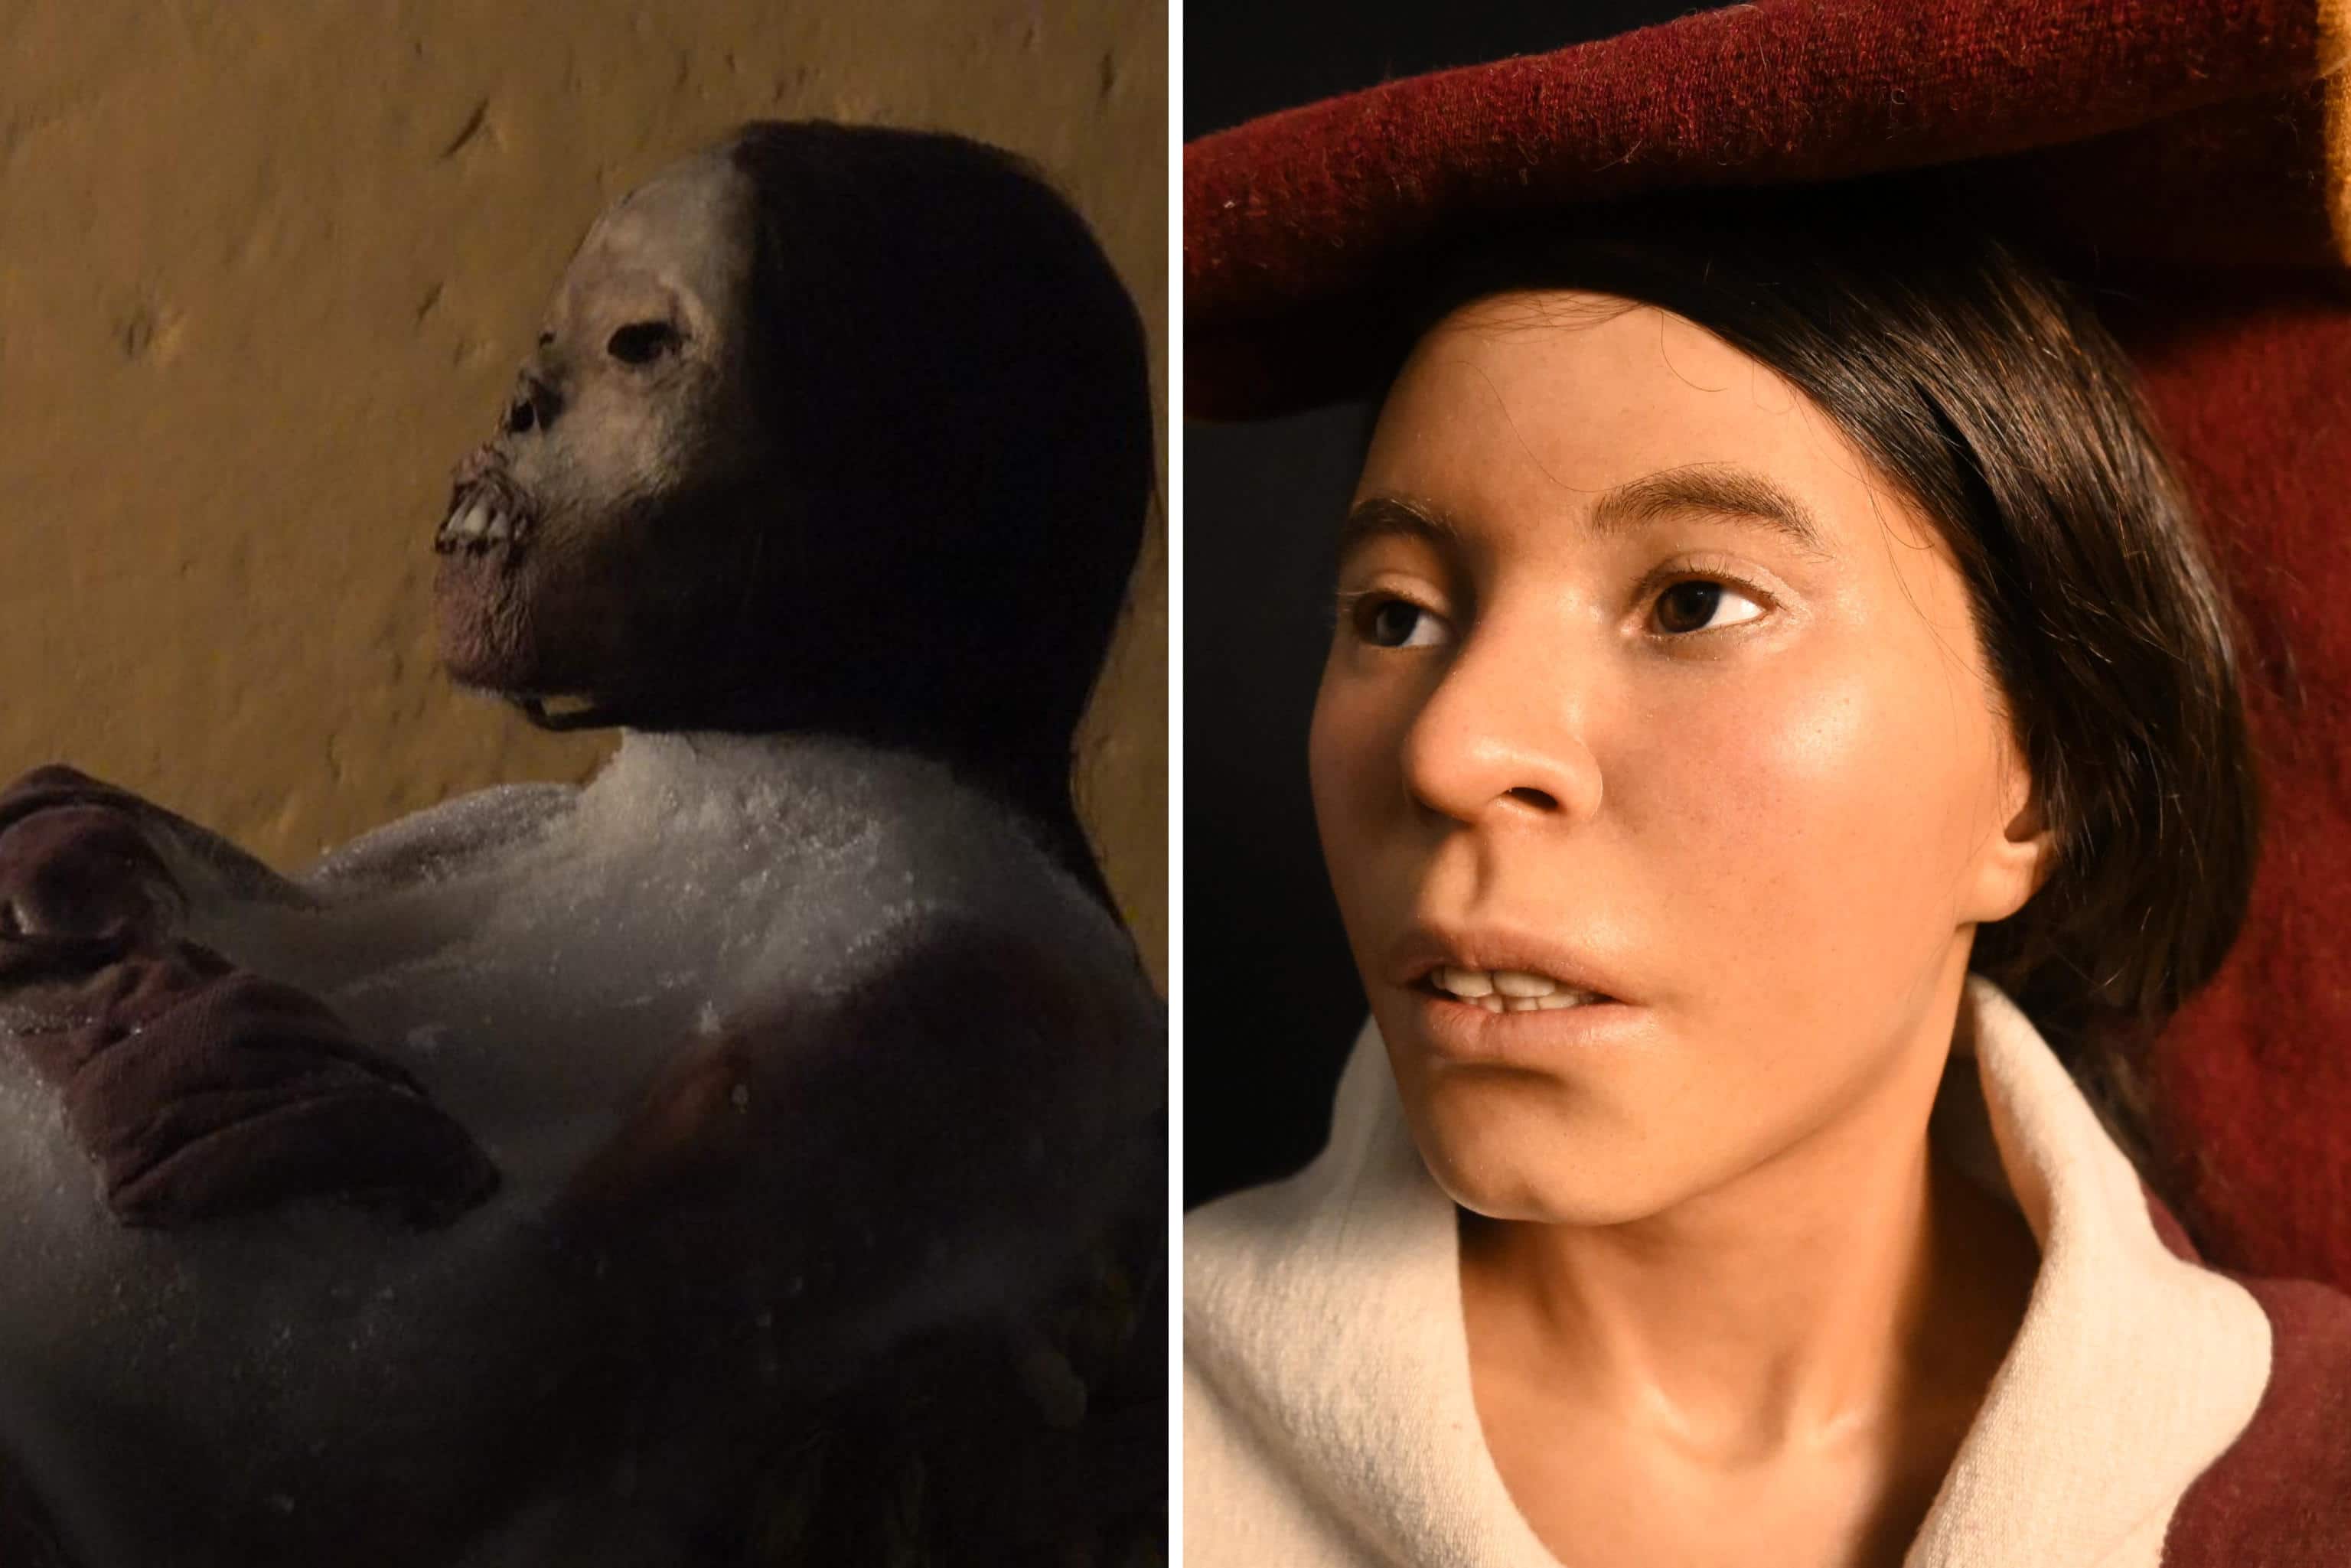 Il volto della 'mummia Juanita' prima (S) e dopo (D) essere stato ricostruito.
TWITTER/ UNIVERSIDAD CATOLICA DE SANTA MARIA
+++ATTENZIONE LA FOTO NON PUO' ESSERE PUBBLICATA O RIPRODOTTA SENZA L'AUTORIZZAZIONE DELLA FONTE DI ORIGINE CUI SI RINVIA+++ NPK +++